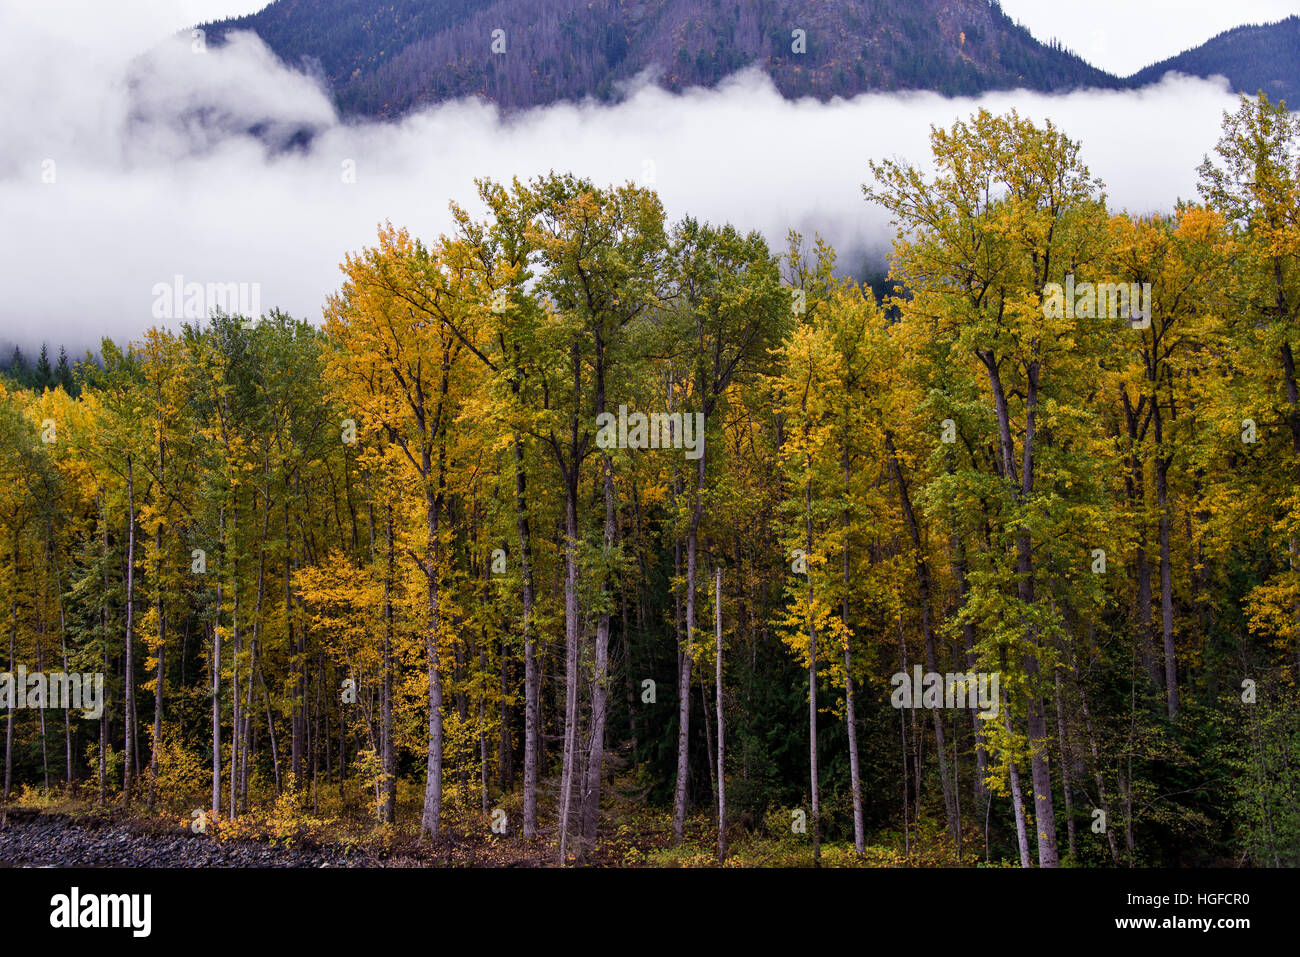 tweedsmuir provincial park, bc, Canada Stock Photo